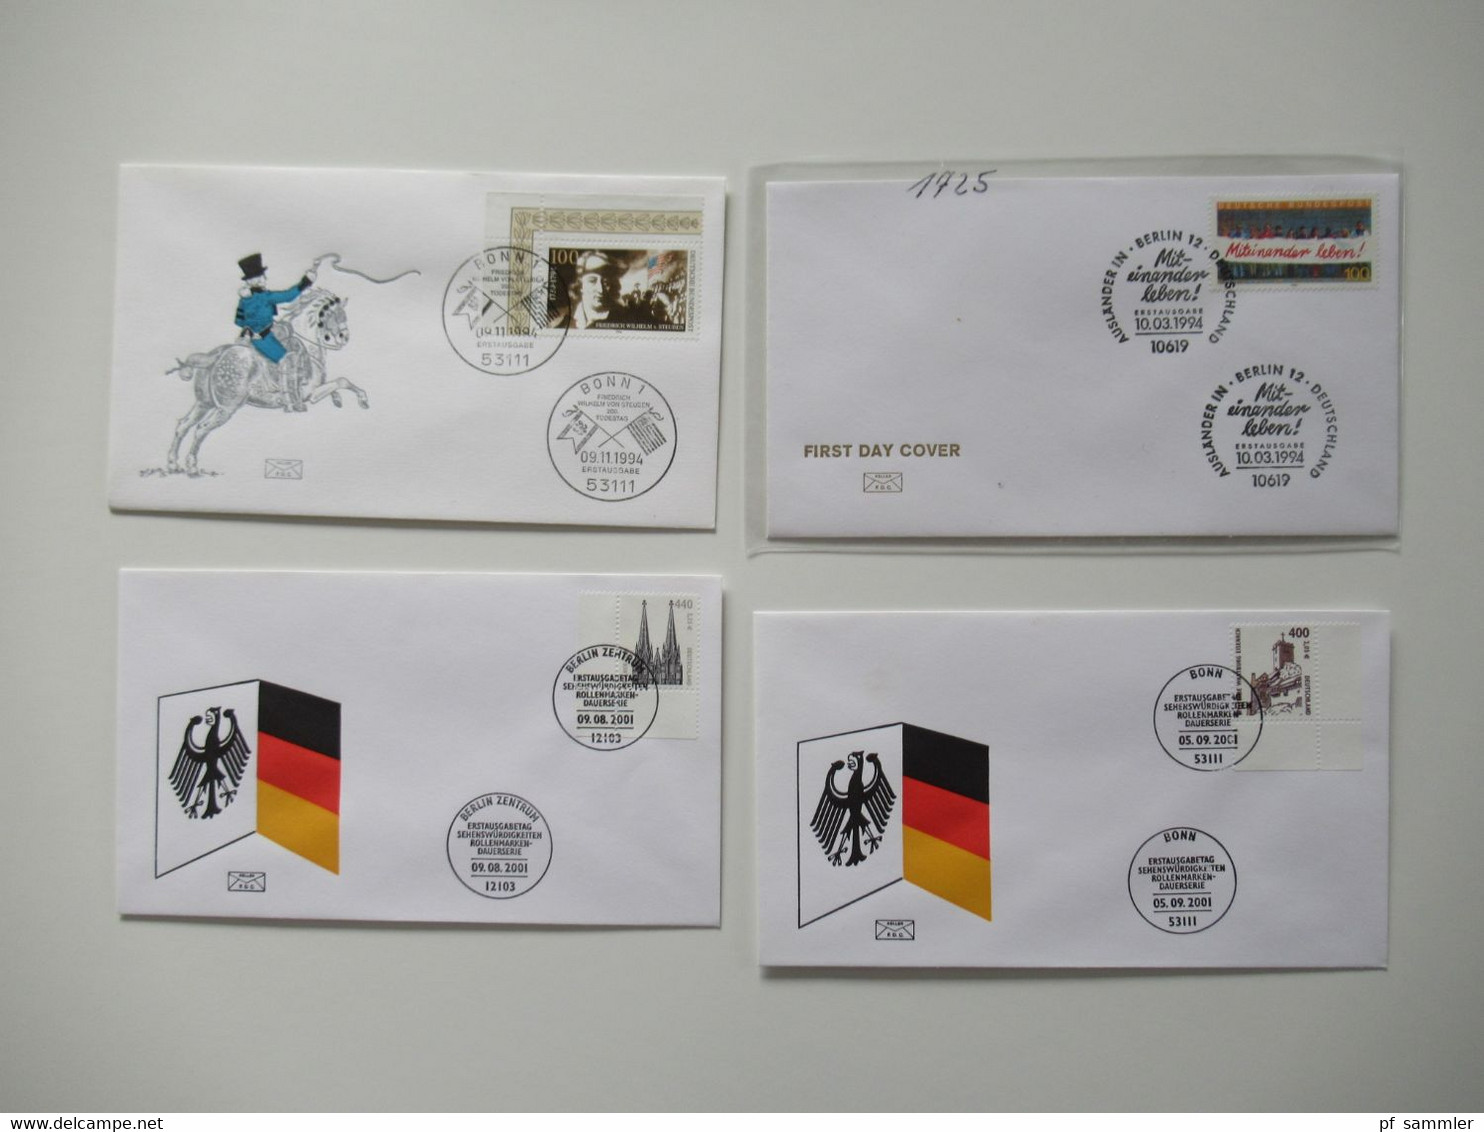 BRD 1980 / 90er teilw. bis 2001 Jahre FDC Posten mit 200 Stück bei den Freimarken auch Randstücke dabei! inkl. ATM Nr.1